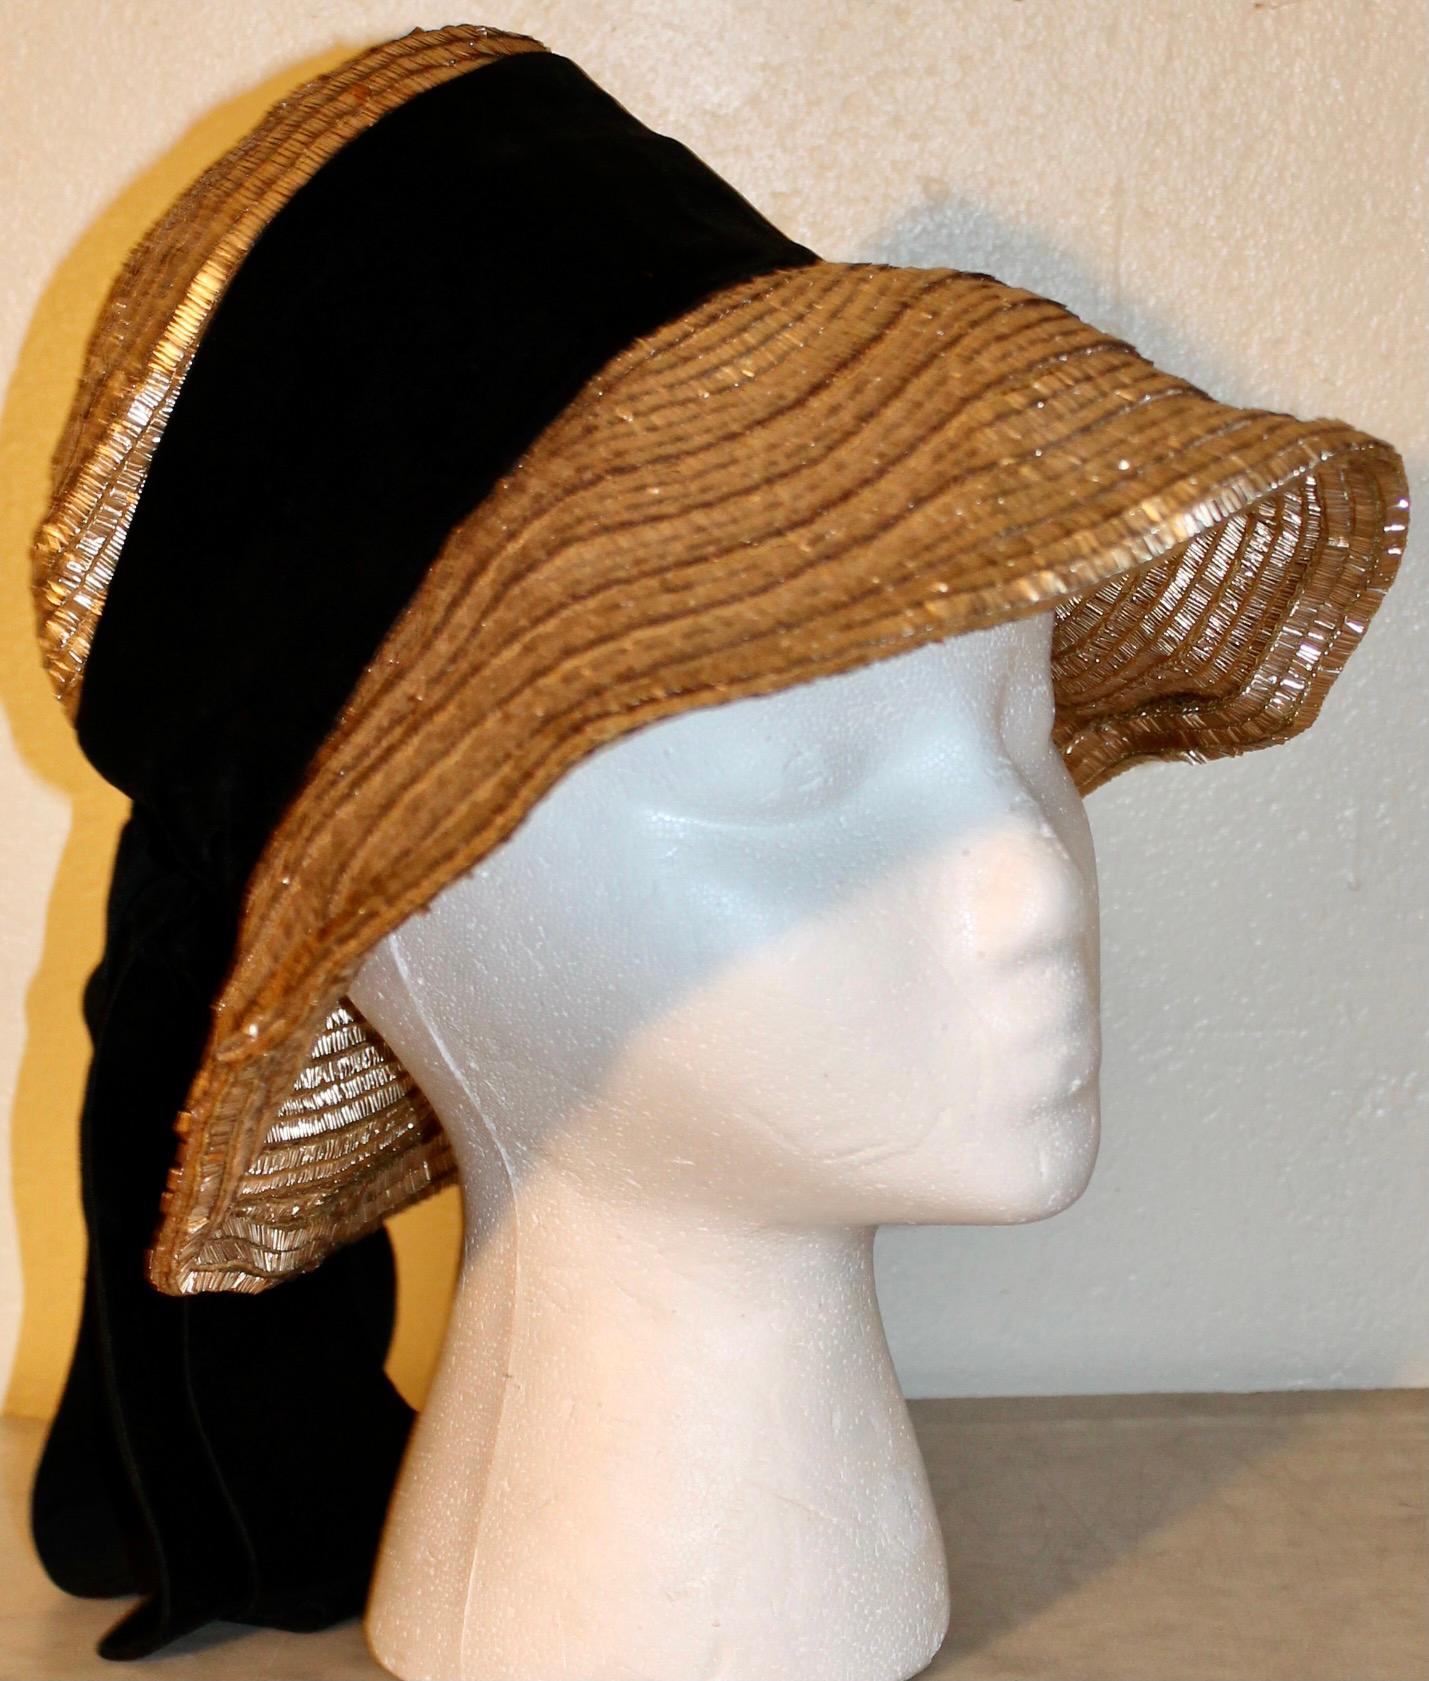 Biete einen originalen Hut von Gerard d'Albouy (1912-1985) aus gewebtem Messing mit einem Samtband an.  Der Pariser Modeschöpfer, der während der deutschen Besatzung (1938-1964) tätig war, war bekannt für seine aufregende und originelle Verwendung